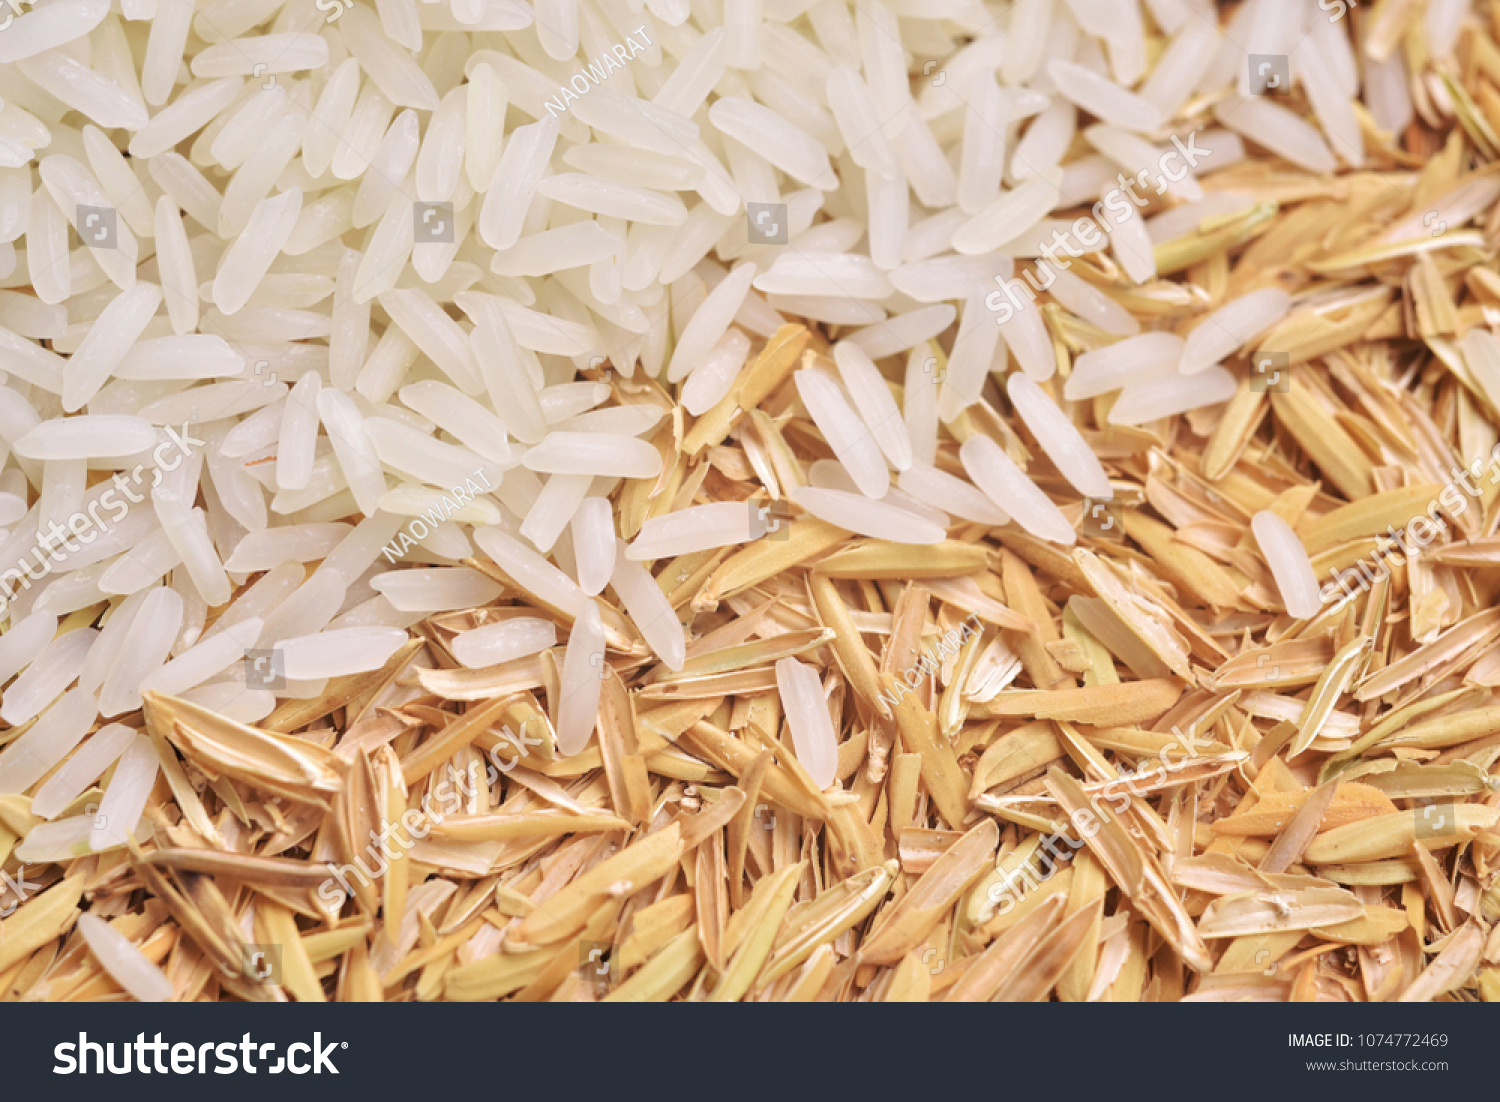 Rice-husk Images, Stock Photos & Vectors | Shutterstock